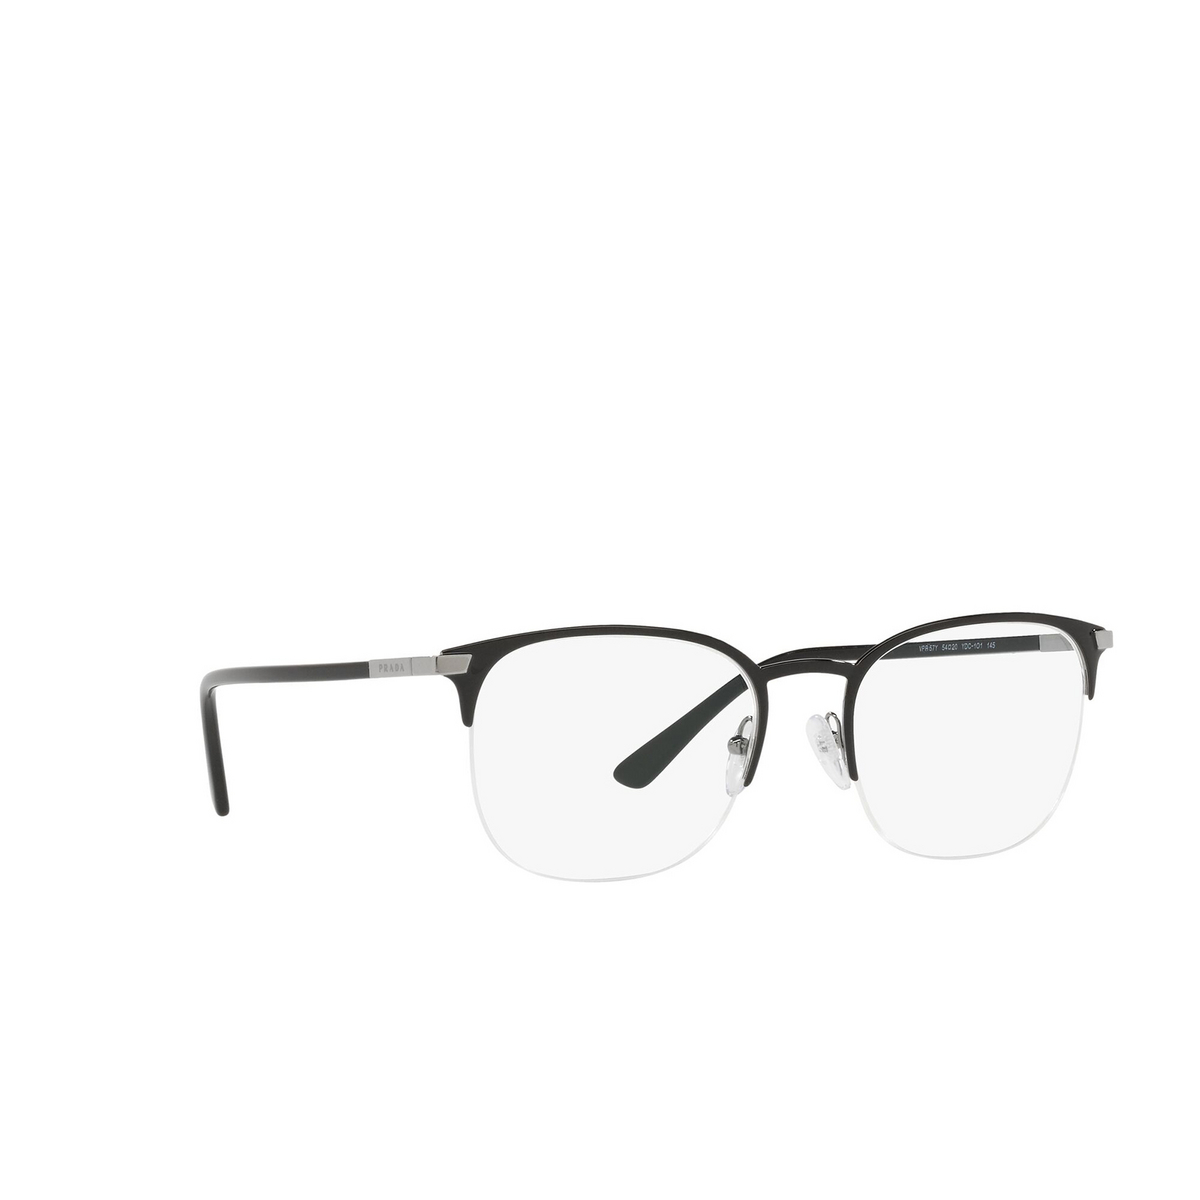 Prada® Oval Eyeglasses: PR 57YV color Black YDC1O1 - three-quarters view.